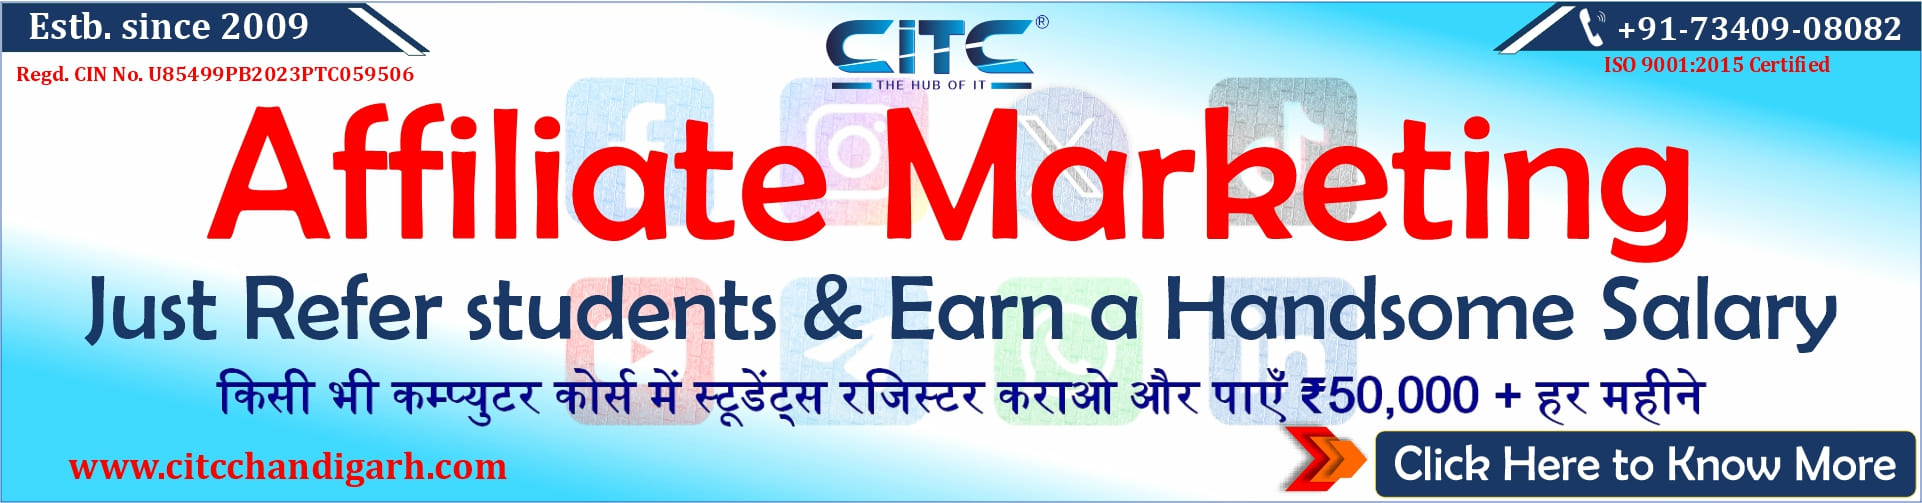 CITC Affiliate Marketing